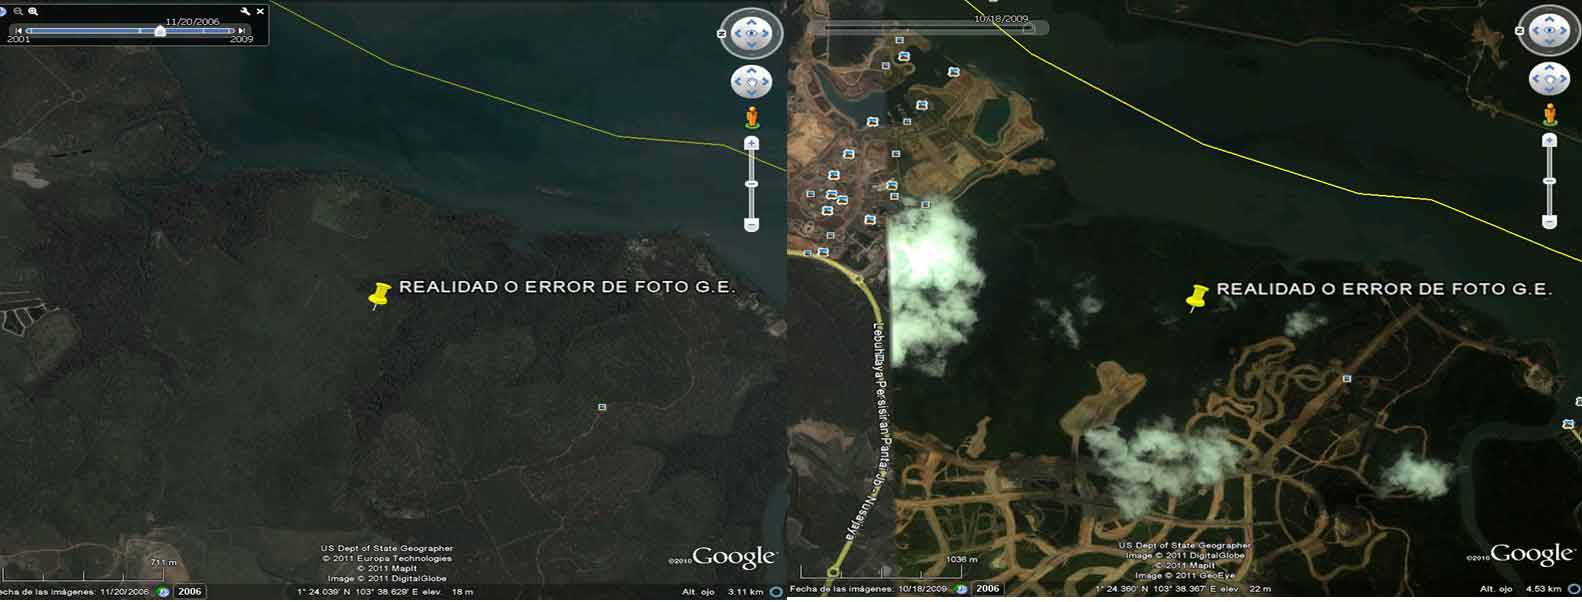 SERRUCHARON HIELO Y SE OLVIDARON EL SERRUCHO? 🗺️ Foro General de Google Earth